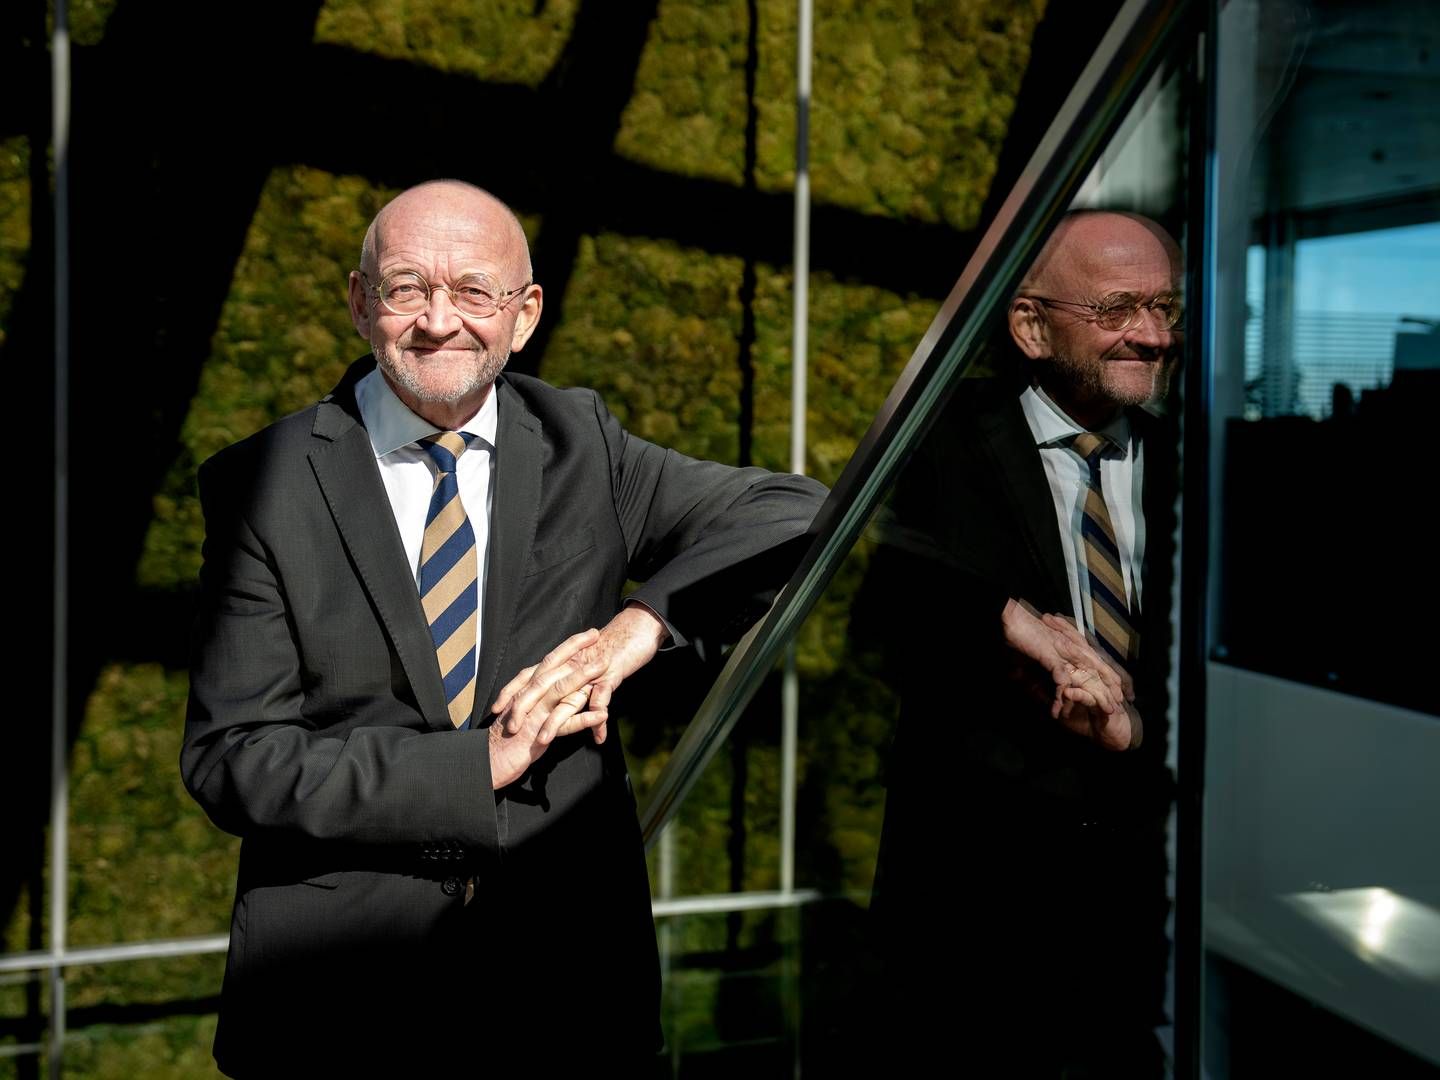 Torben Möger Pedersen stoppede 1. oktober 2023 som adm. direktør i Pensiondanmark efter mere end 30 år som topchef for pensionsselskabet. | Foto: Stine Bidstrup